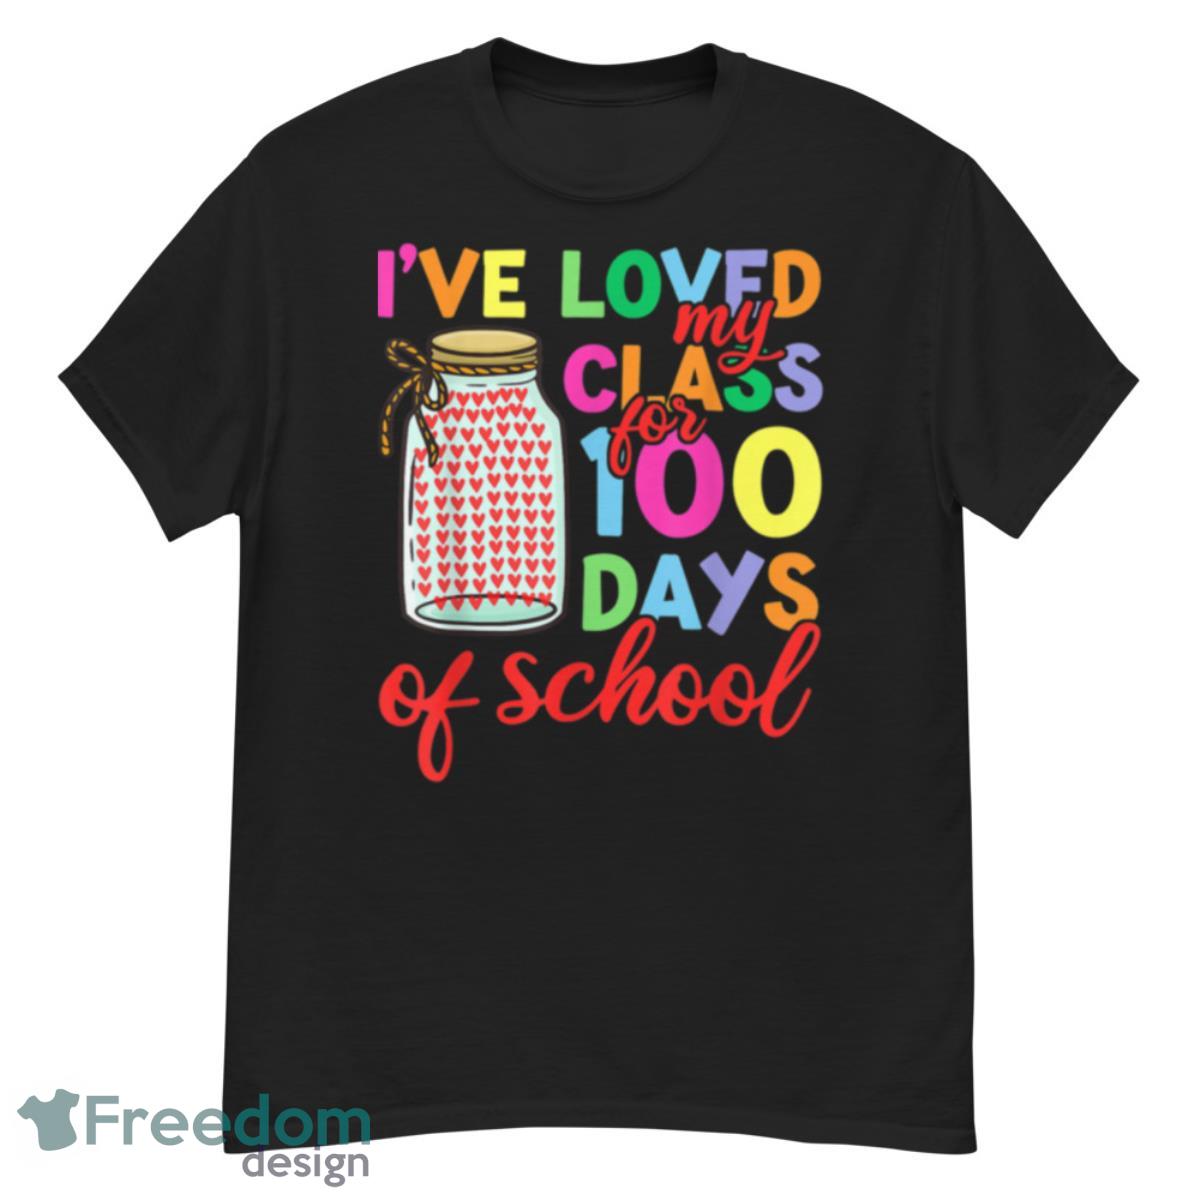 100 Days Of School Shirt Teacher, Men Women Loved My Class T Shirt - G500 Men’s Classic T-Shirt